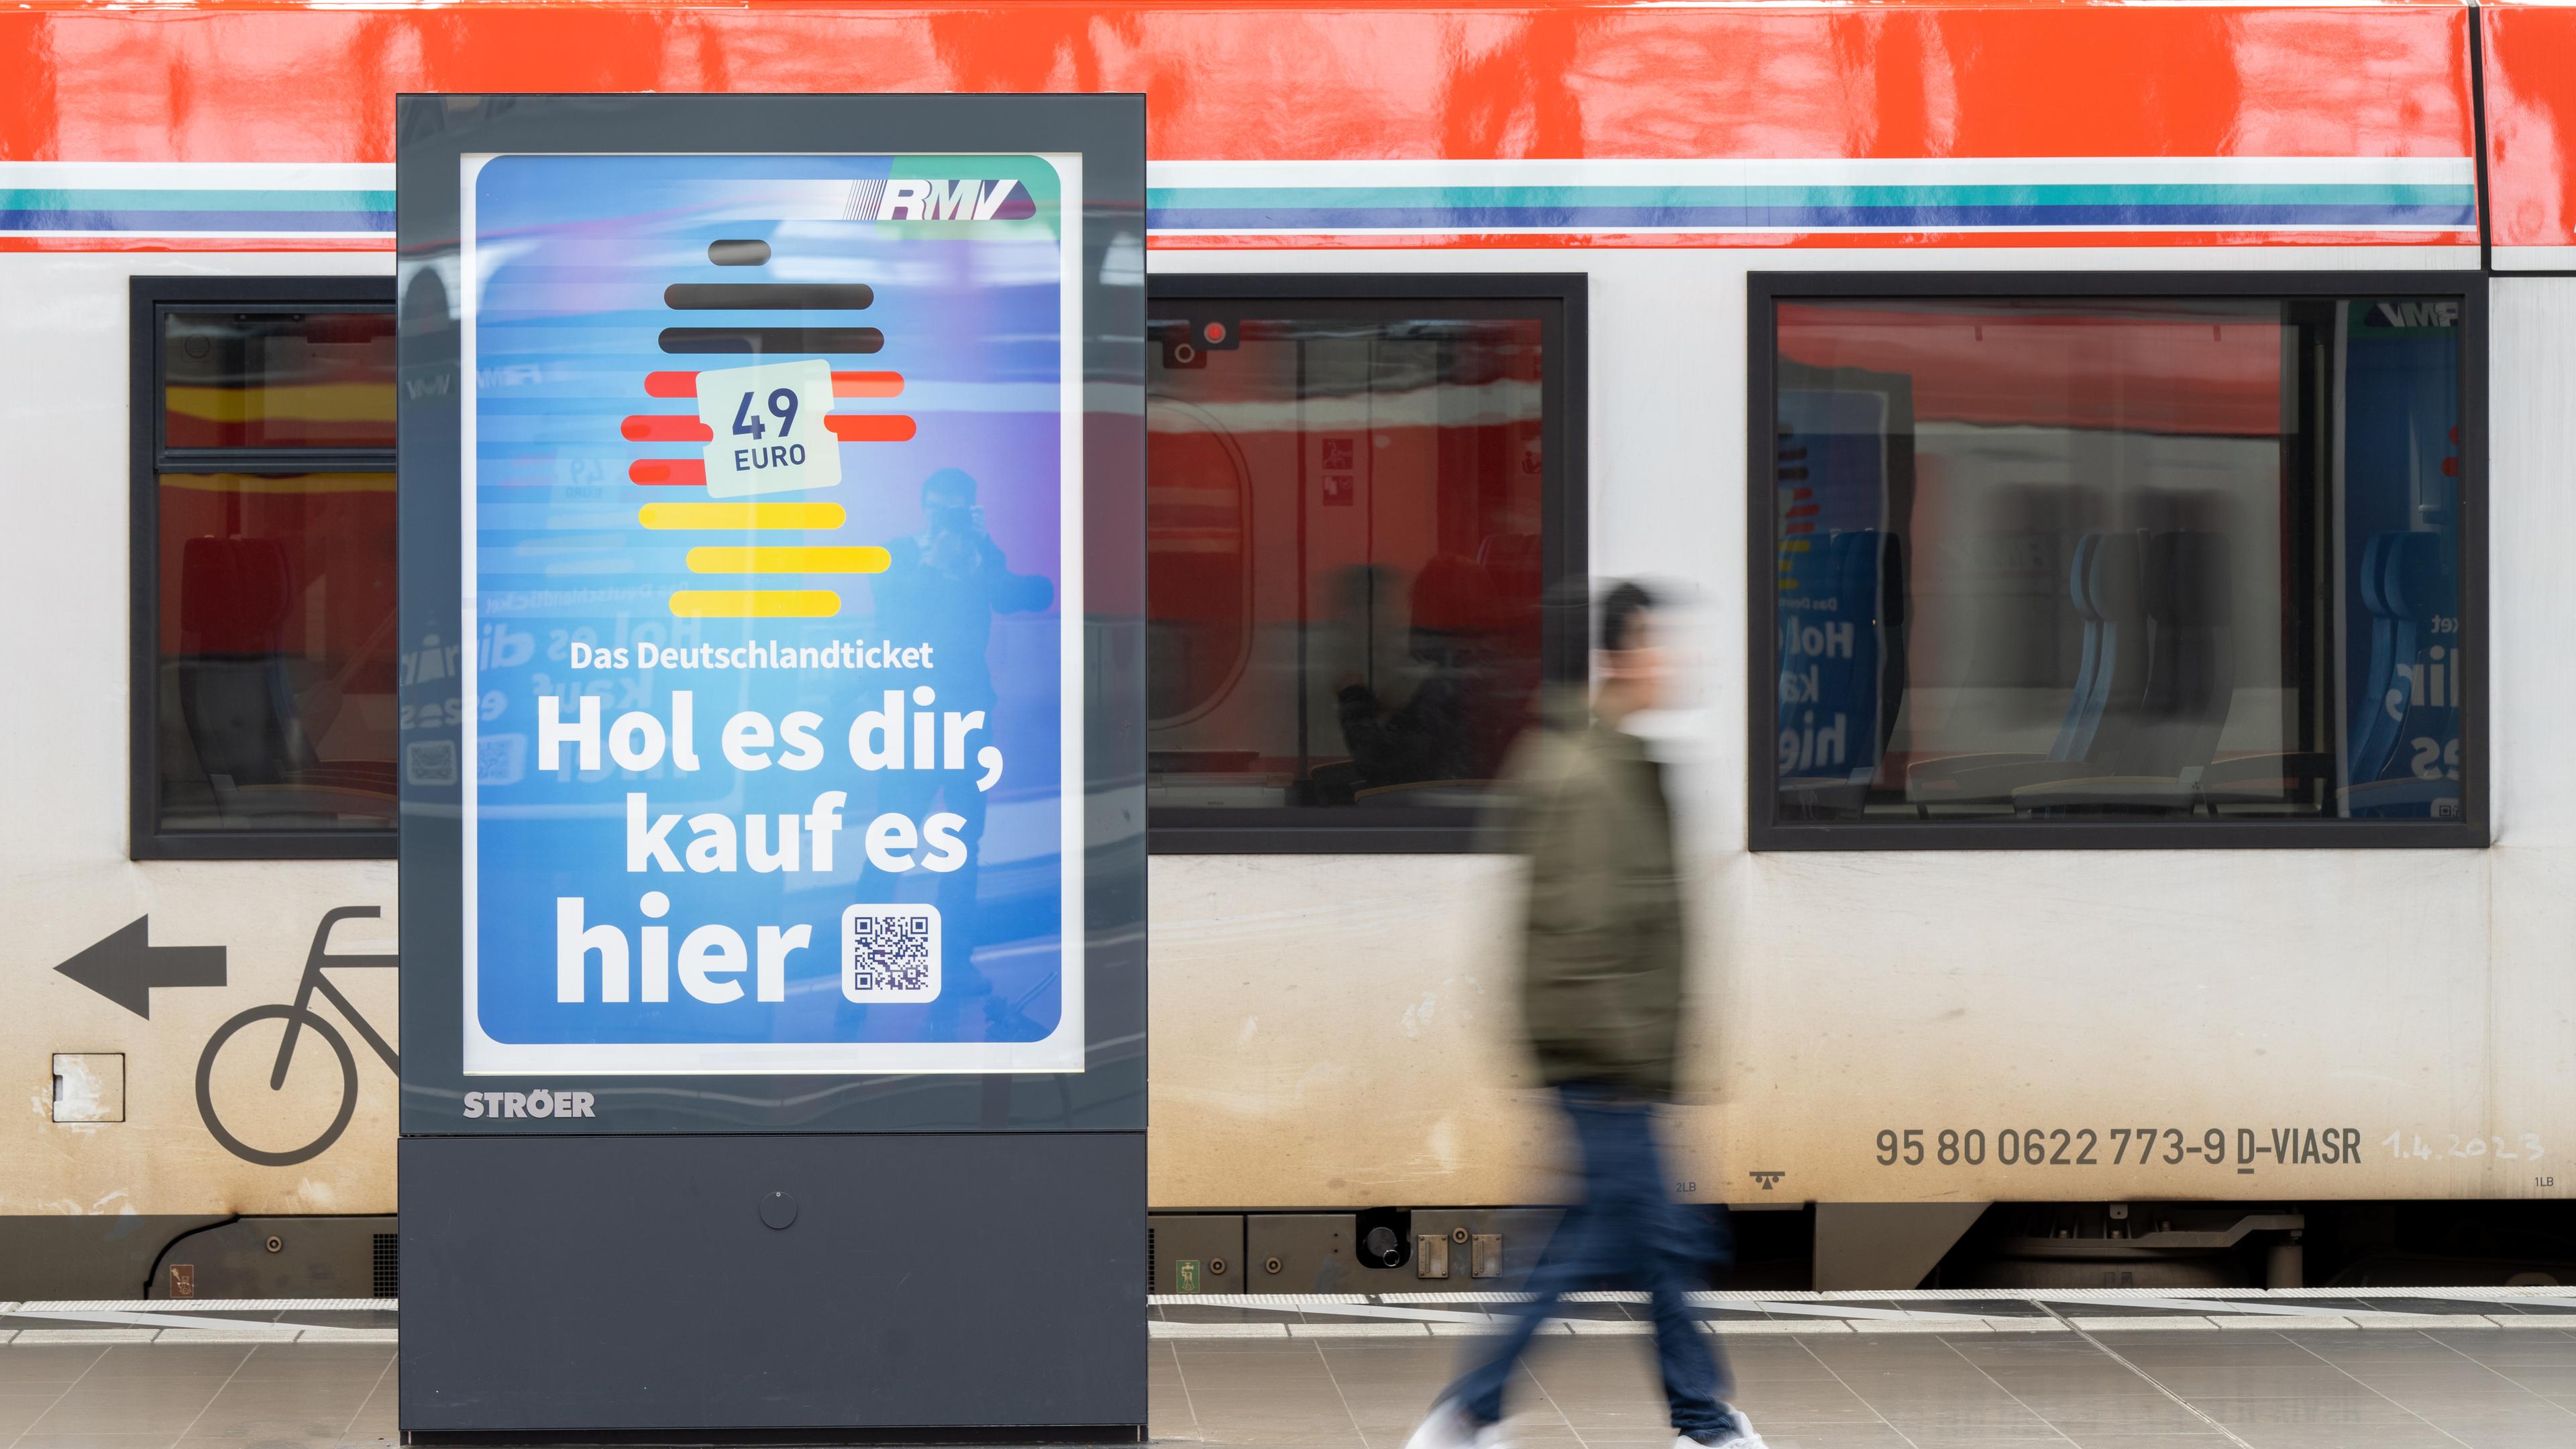 Auf einer digitalen Werbetafel an einem Bahngleis ist eine Werbung für das Deutschlandticket zu sehen. Darauf steht: "Das Deutschlandticket - hol es dir, kauf es hier".